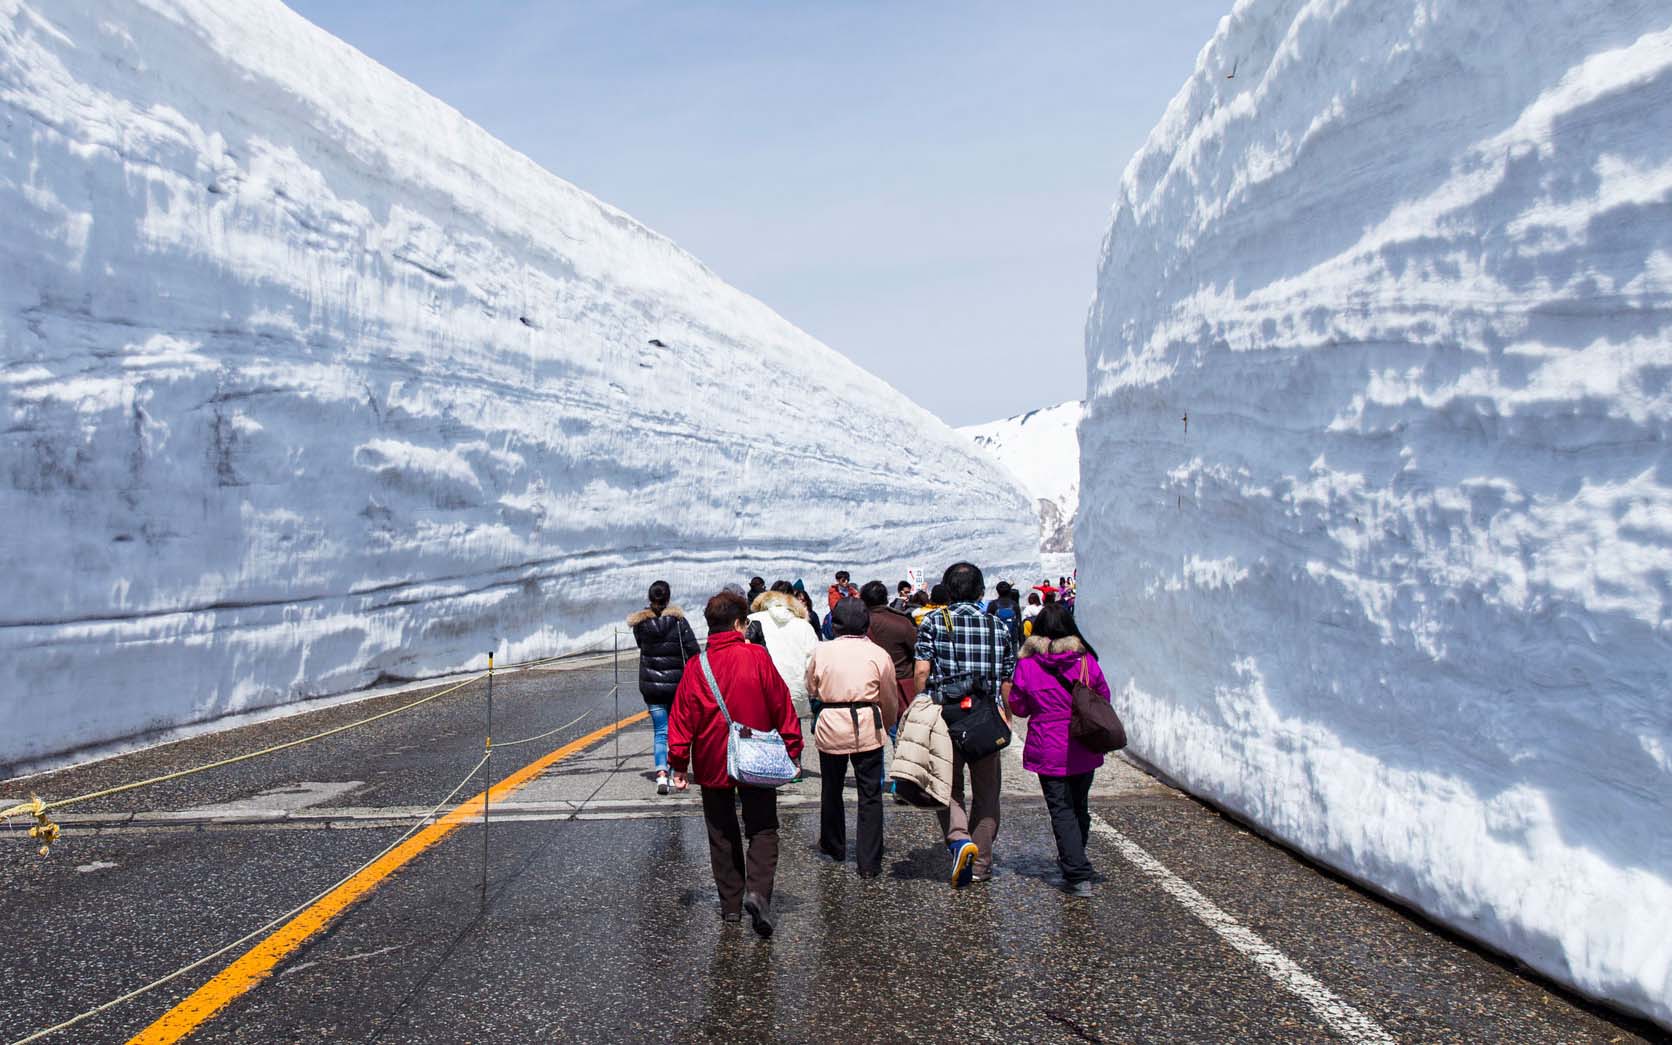 Snow Corridor on the Tateyama Kurobe Alpine Route